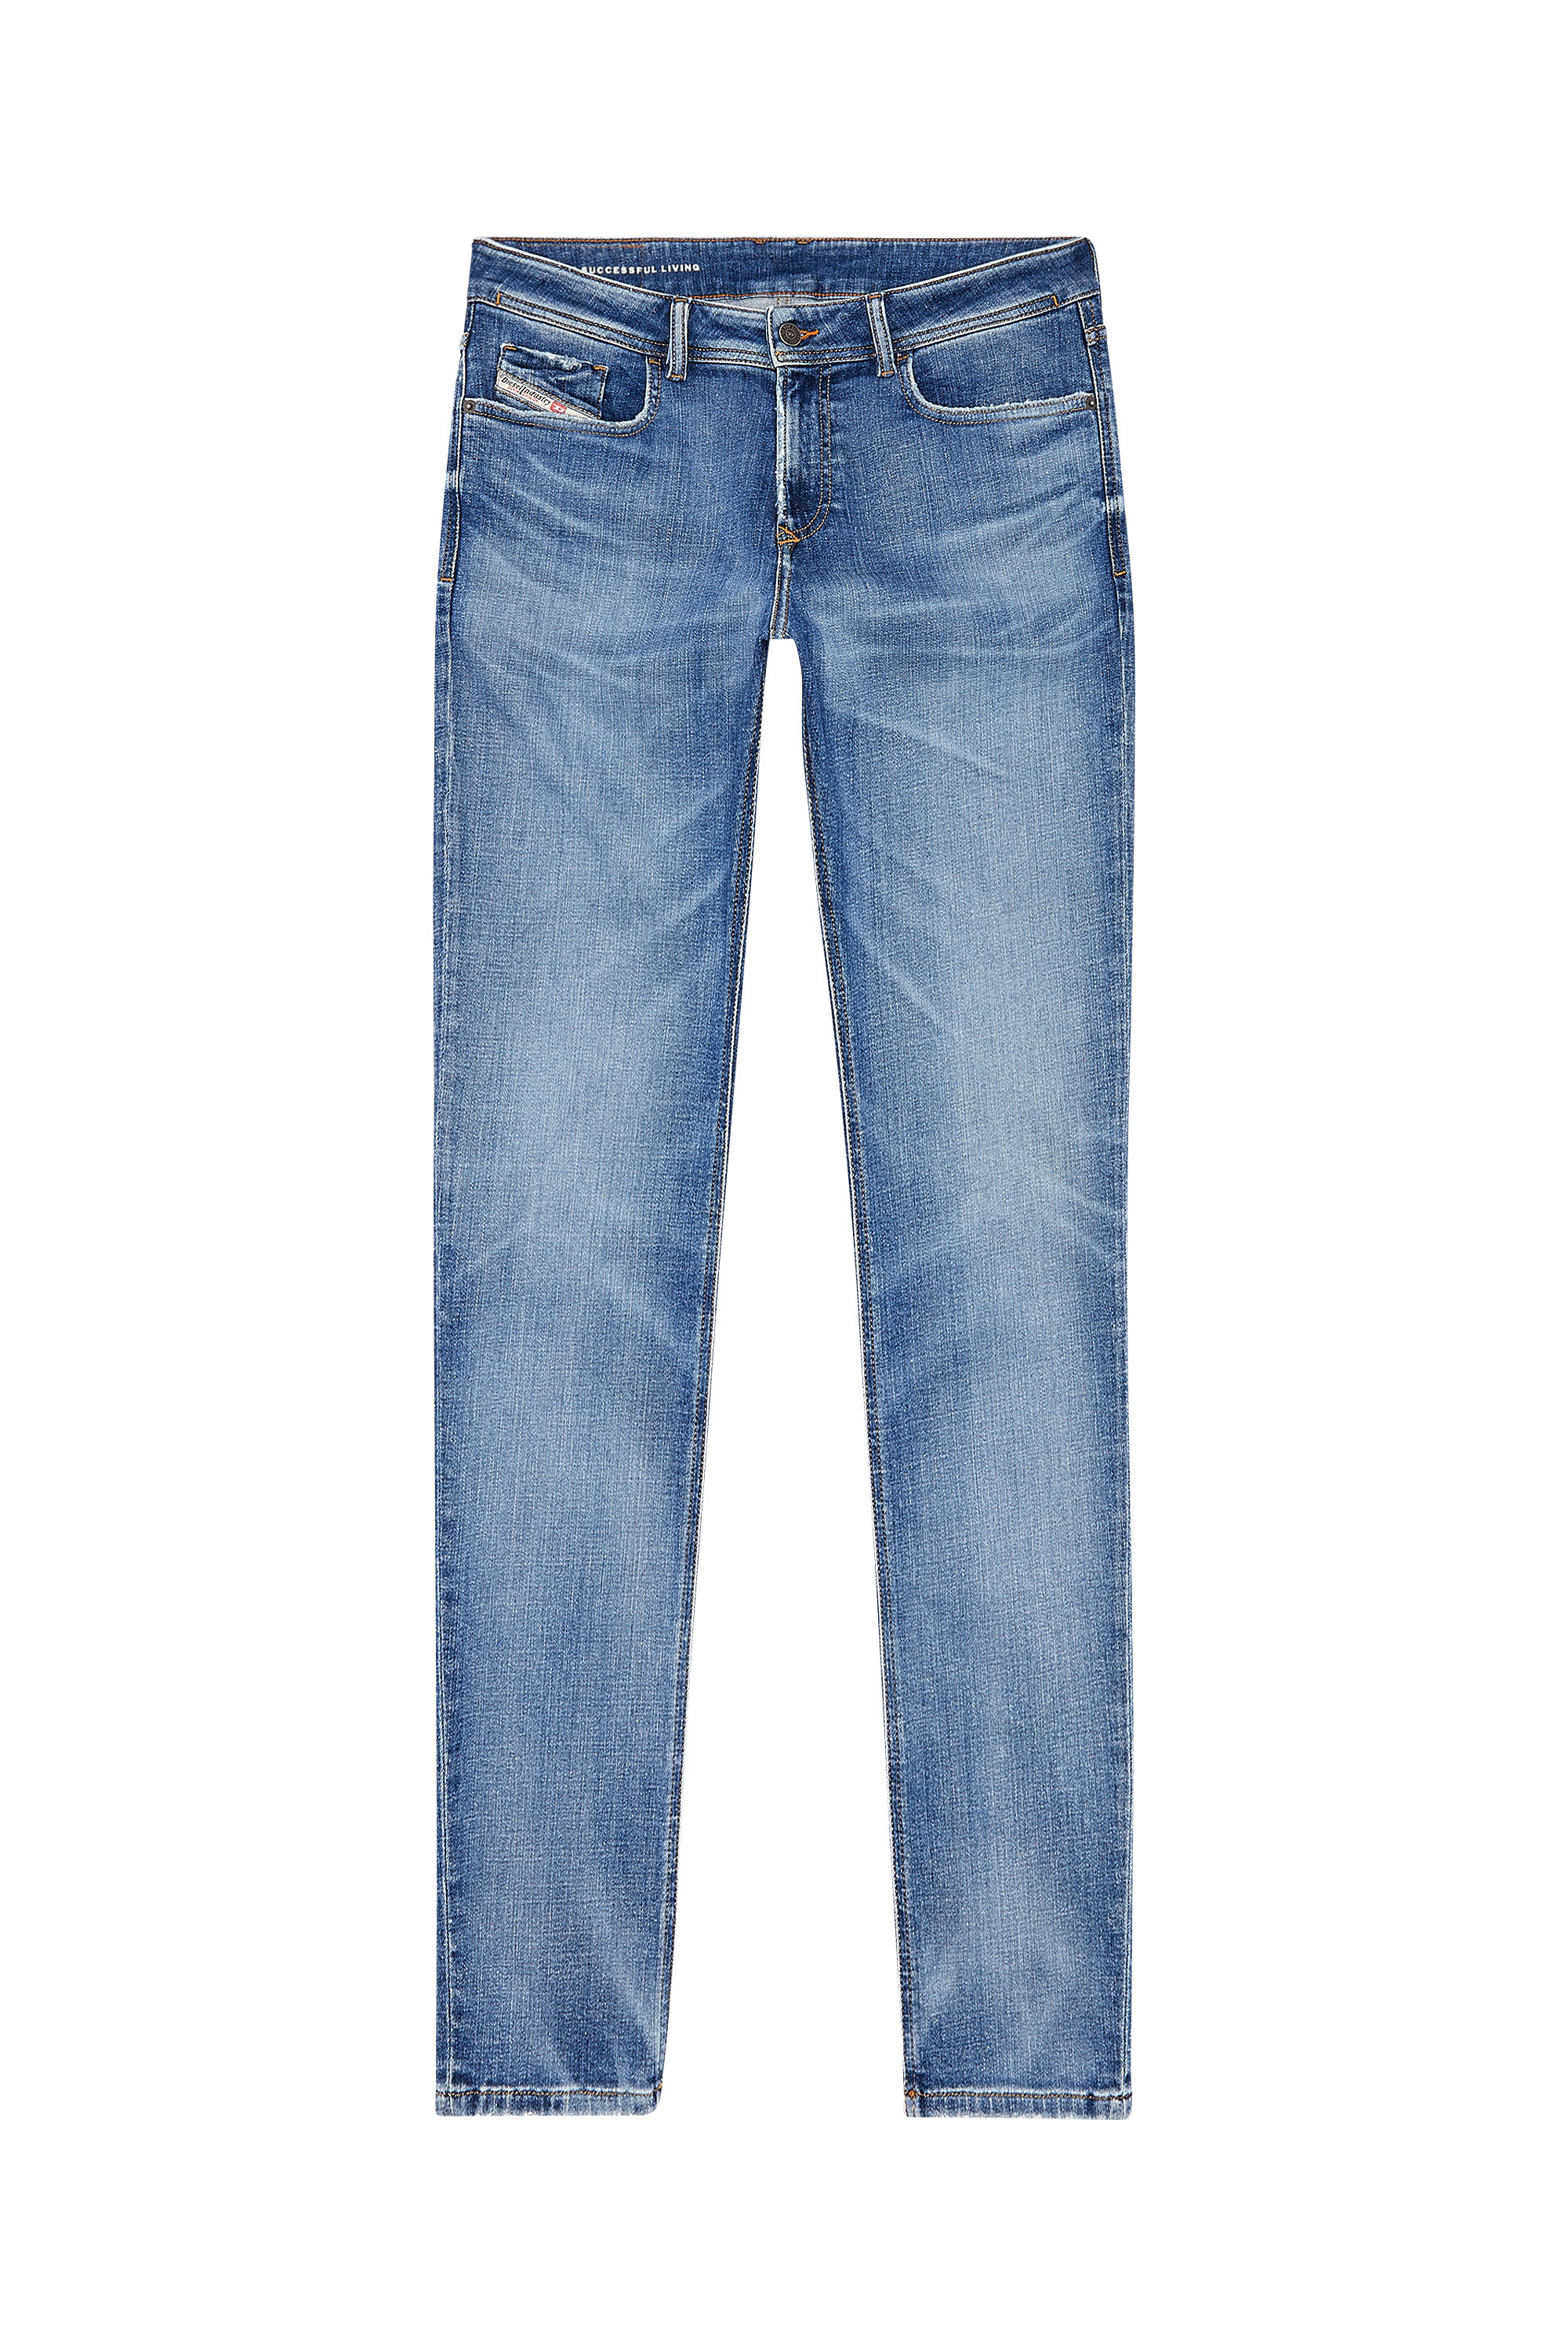 Diesel - Man Skinny Jeans 1979 Sleenker 09H68, Medium blue - Image 3